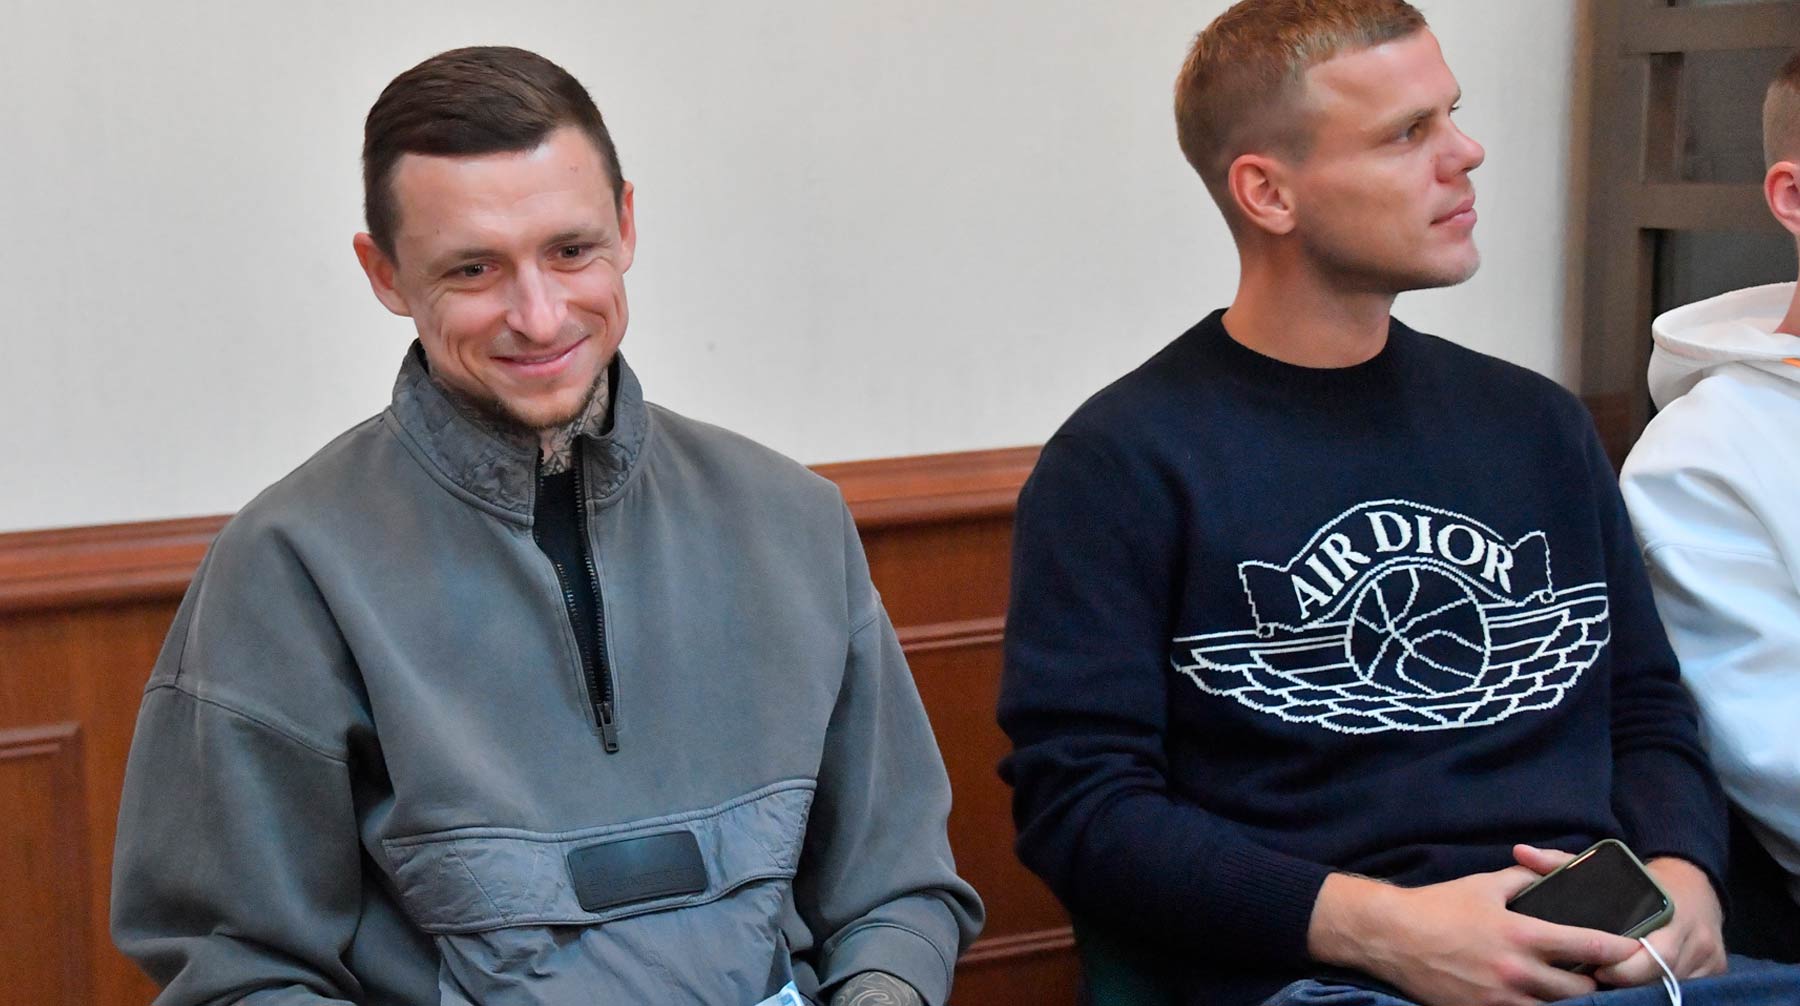 Адвокаты спортсменов недовольны решением суда и собираются его обжаловать Фото: © Global Look Press /  Komsomolskaya Pravda